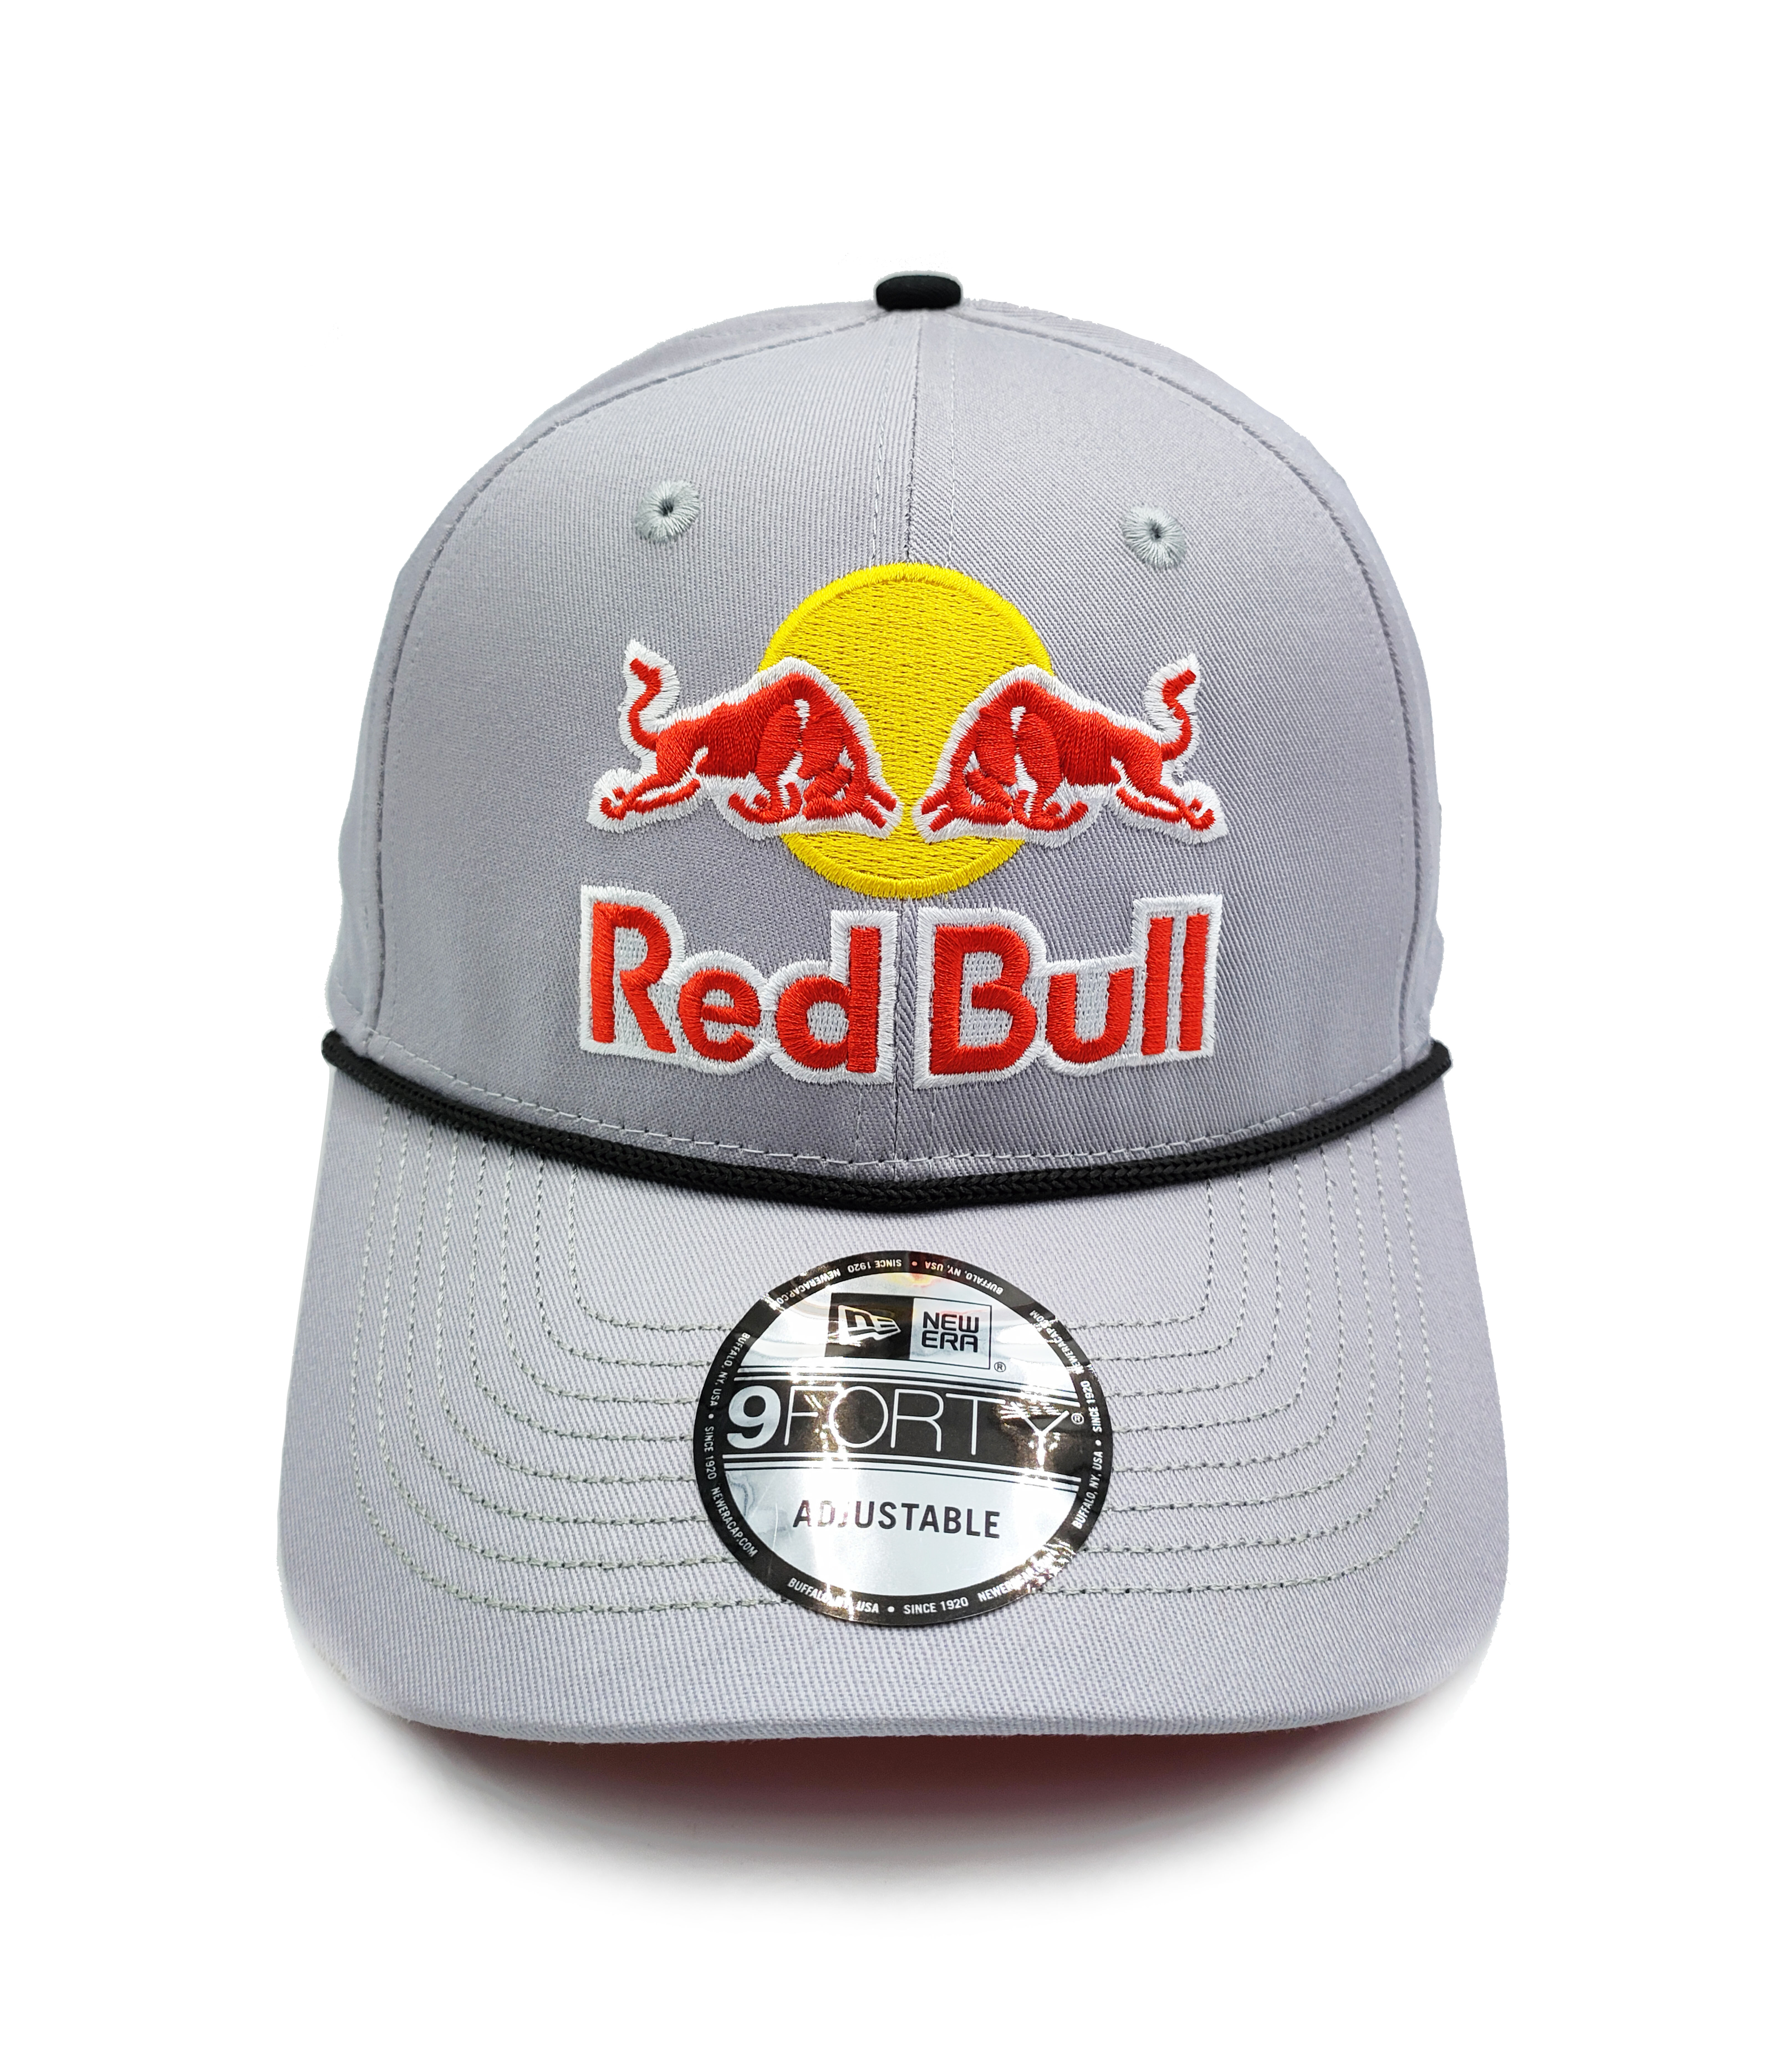 red-bull-cap-gray-hat